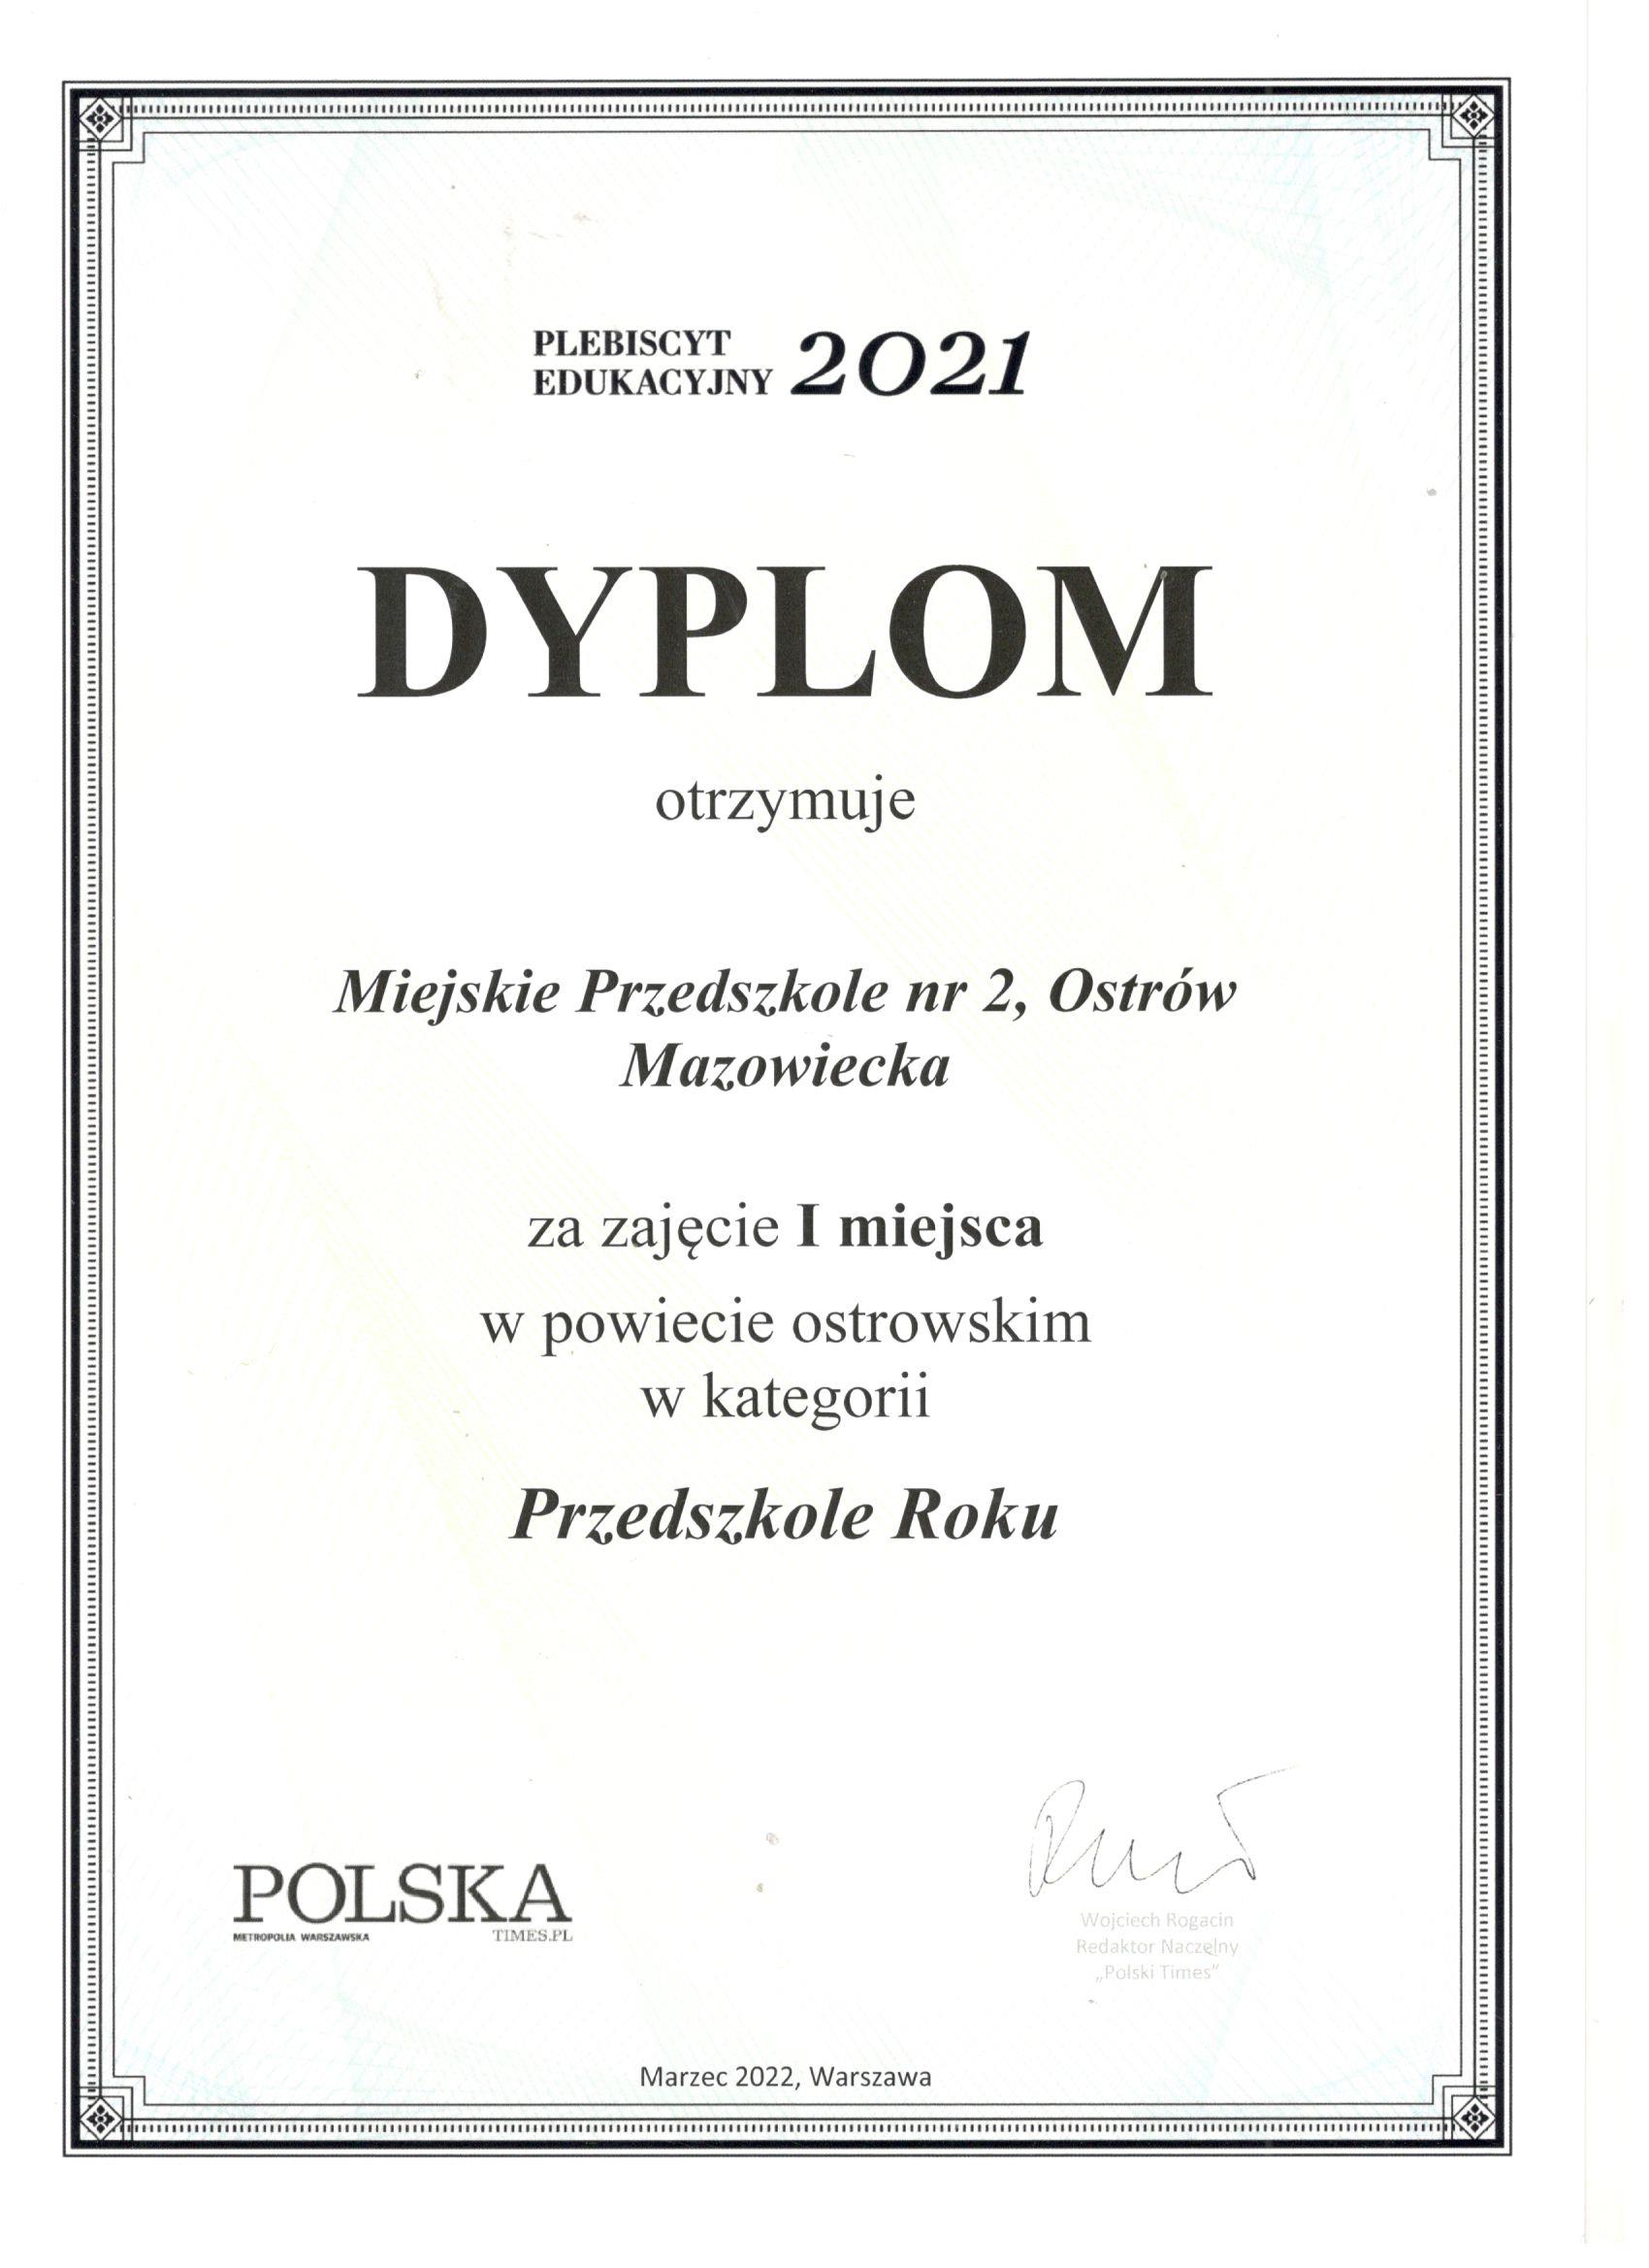 Dyplom dla miejskiego przedszkola nr 2 w Ostrowi Mazowieckiej za zajęcie 1 miejsca jako Przedszkole Roku 2021